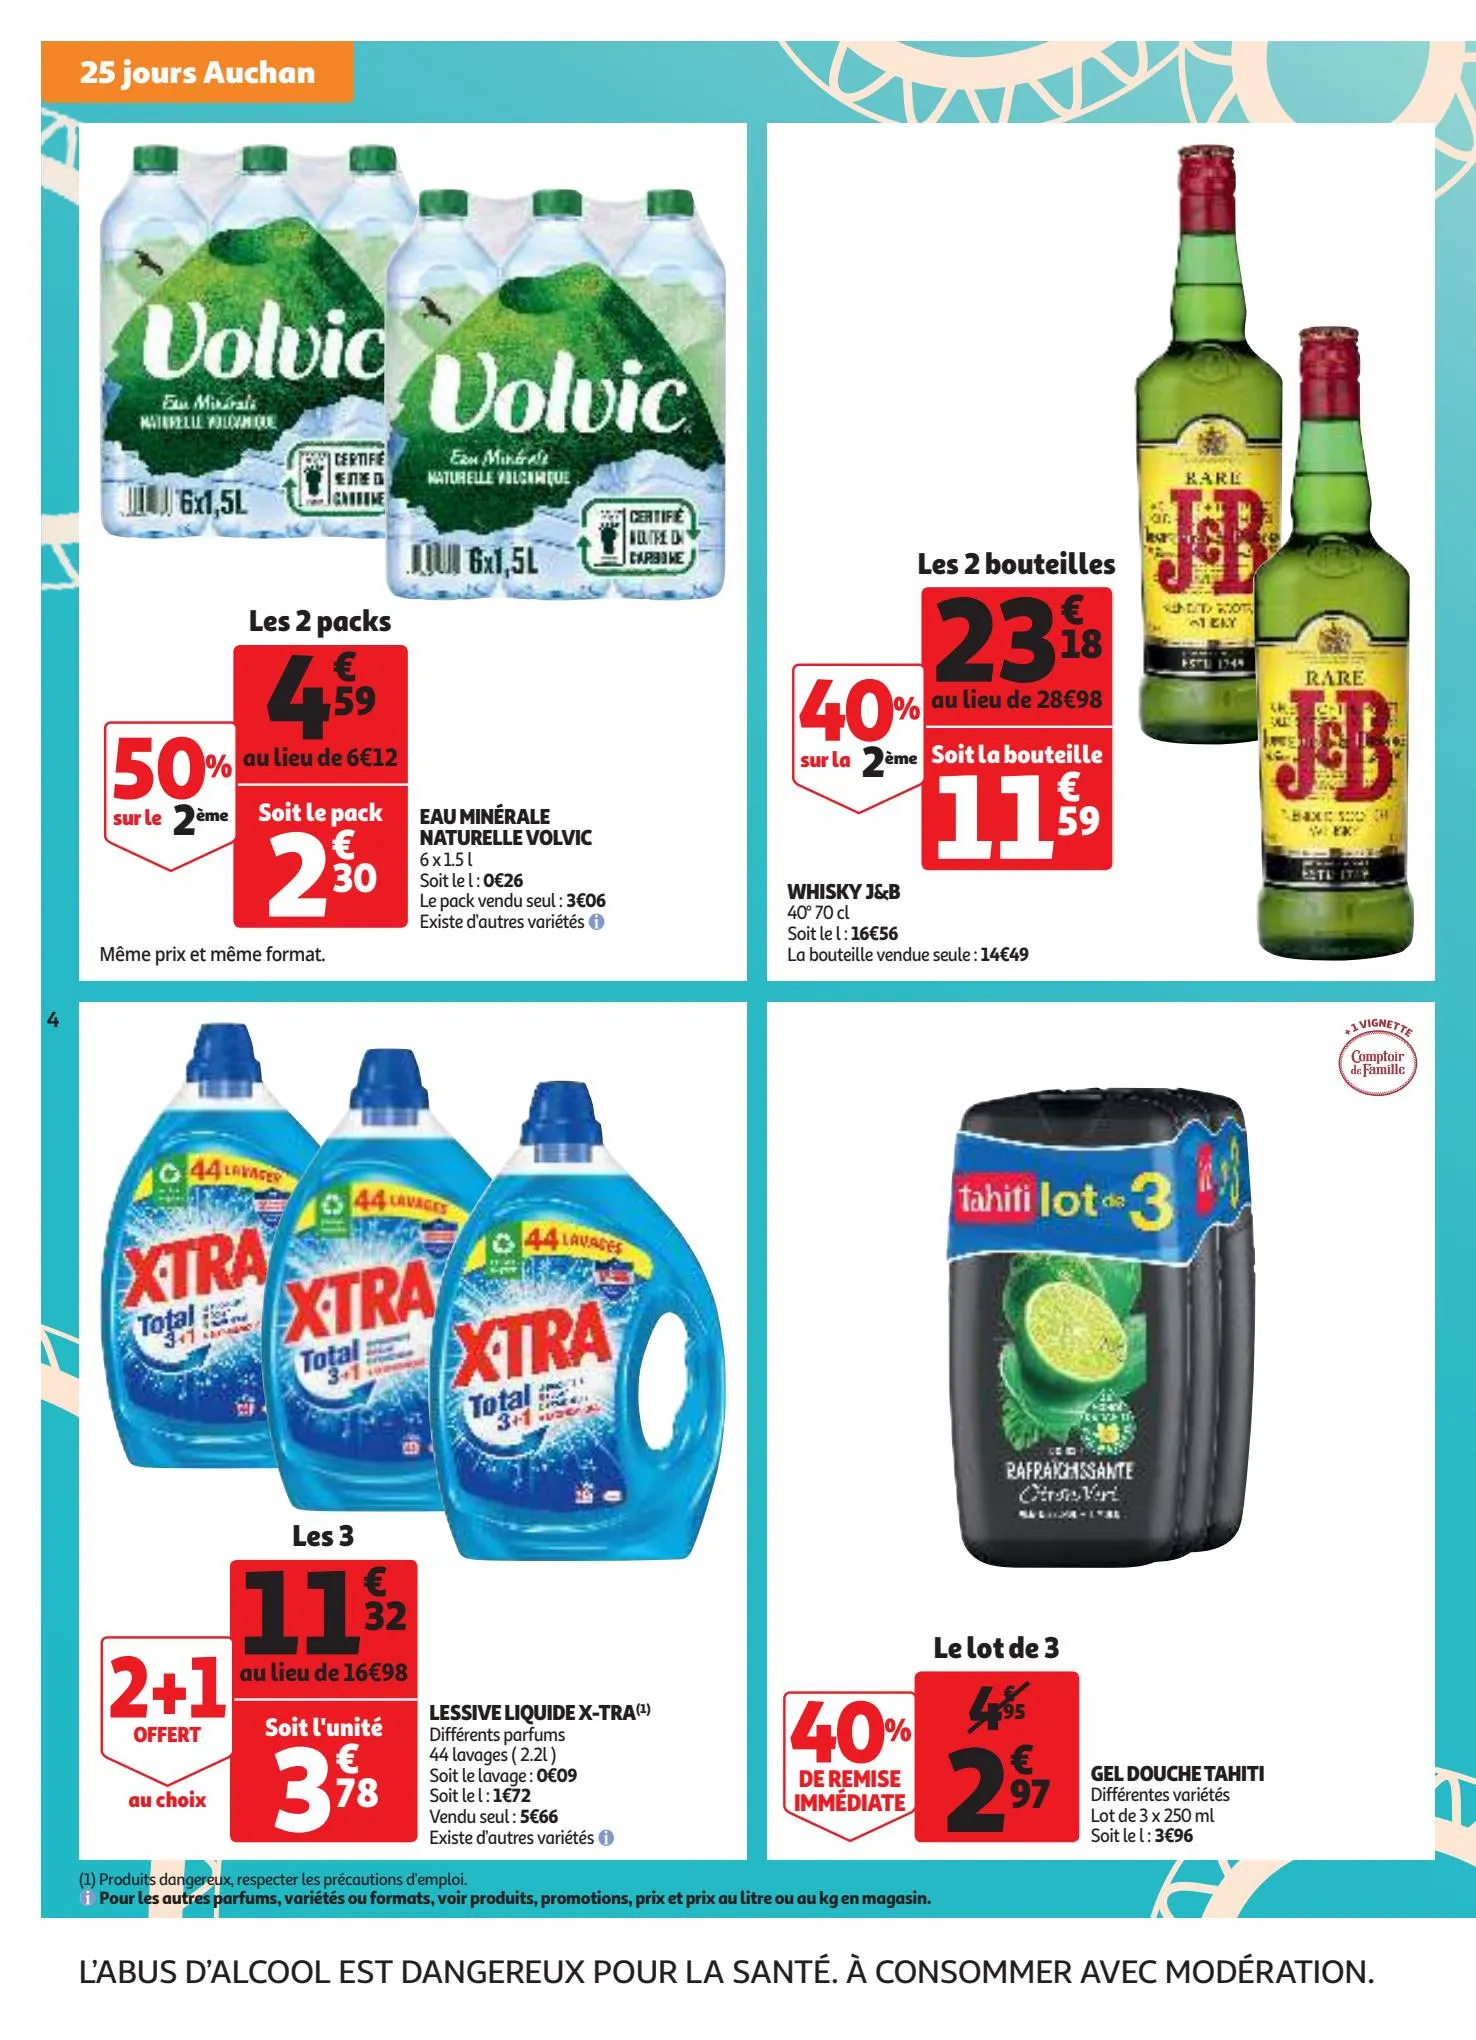 Catalogue 25 jours Auchan, page 00004